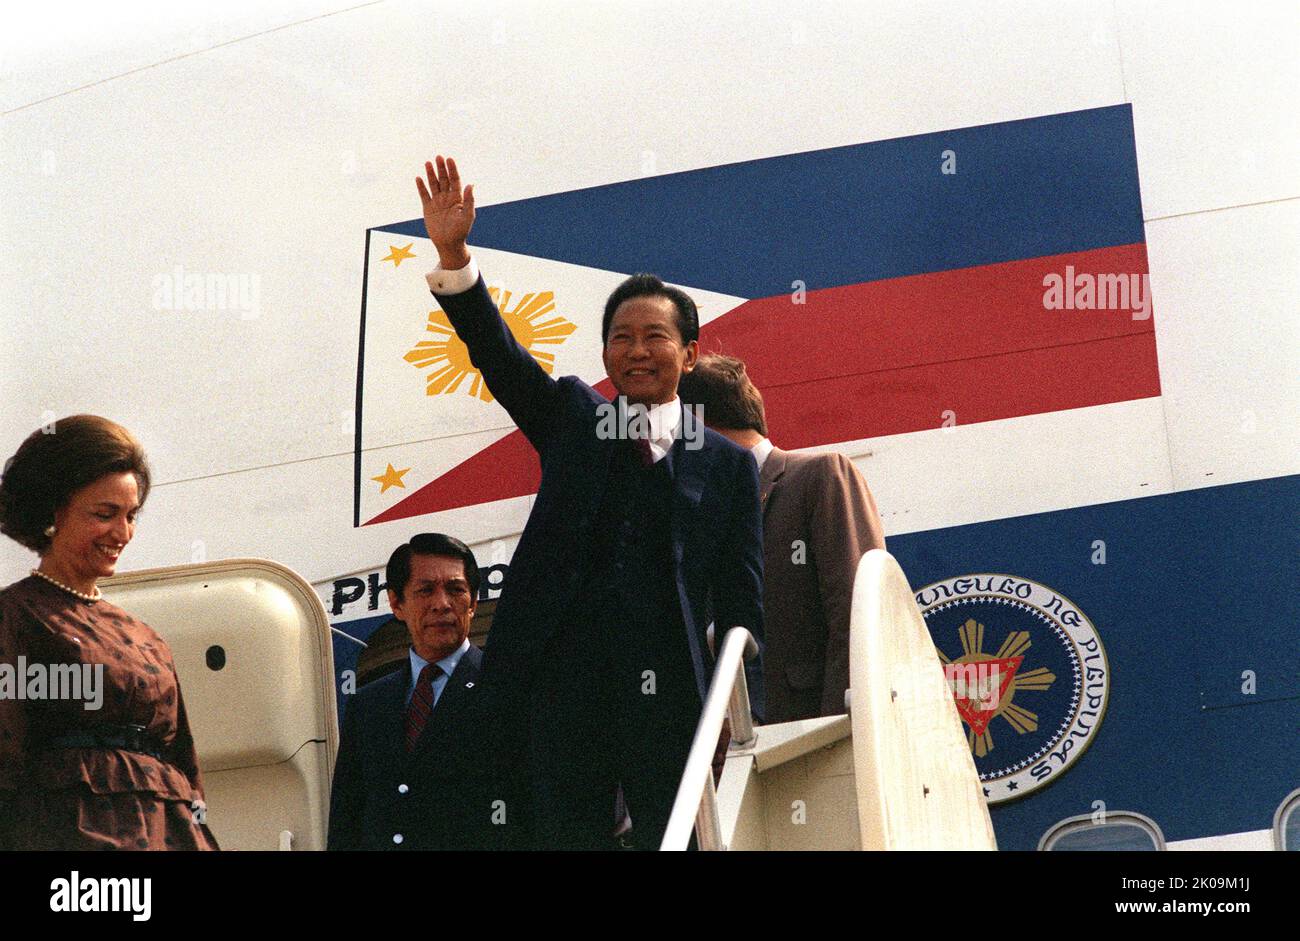 El Presidente Ferdinand E. Marcos de Filipinas, seguido por el Ministro de Defensa Juan Enrile, se detiene para saludar a la gente que espera darle la bienvenida desde un PAL 747 para una visita a Washington D.C. Foto de stock